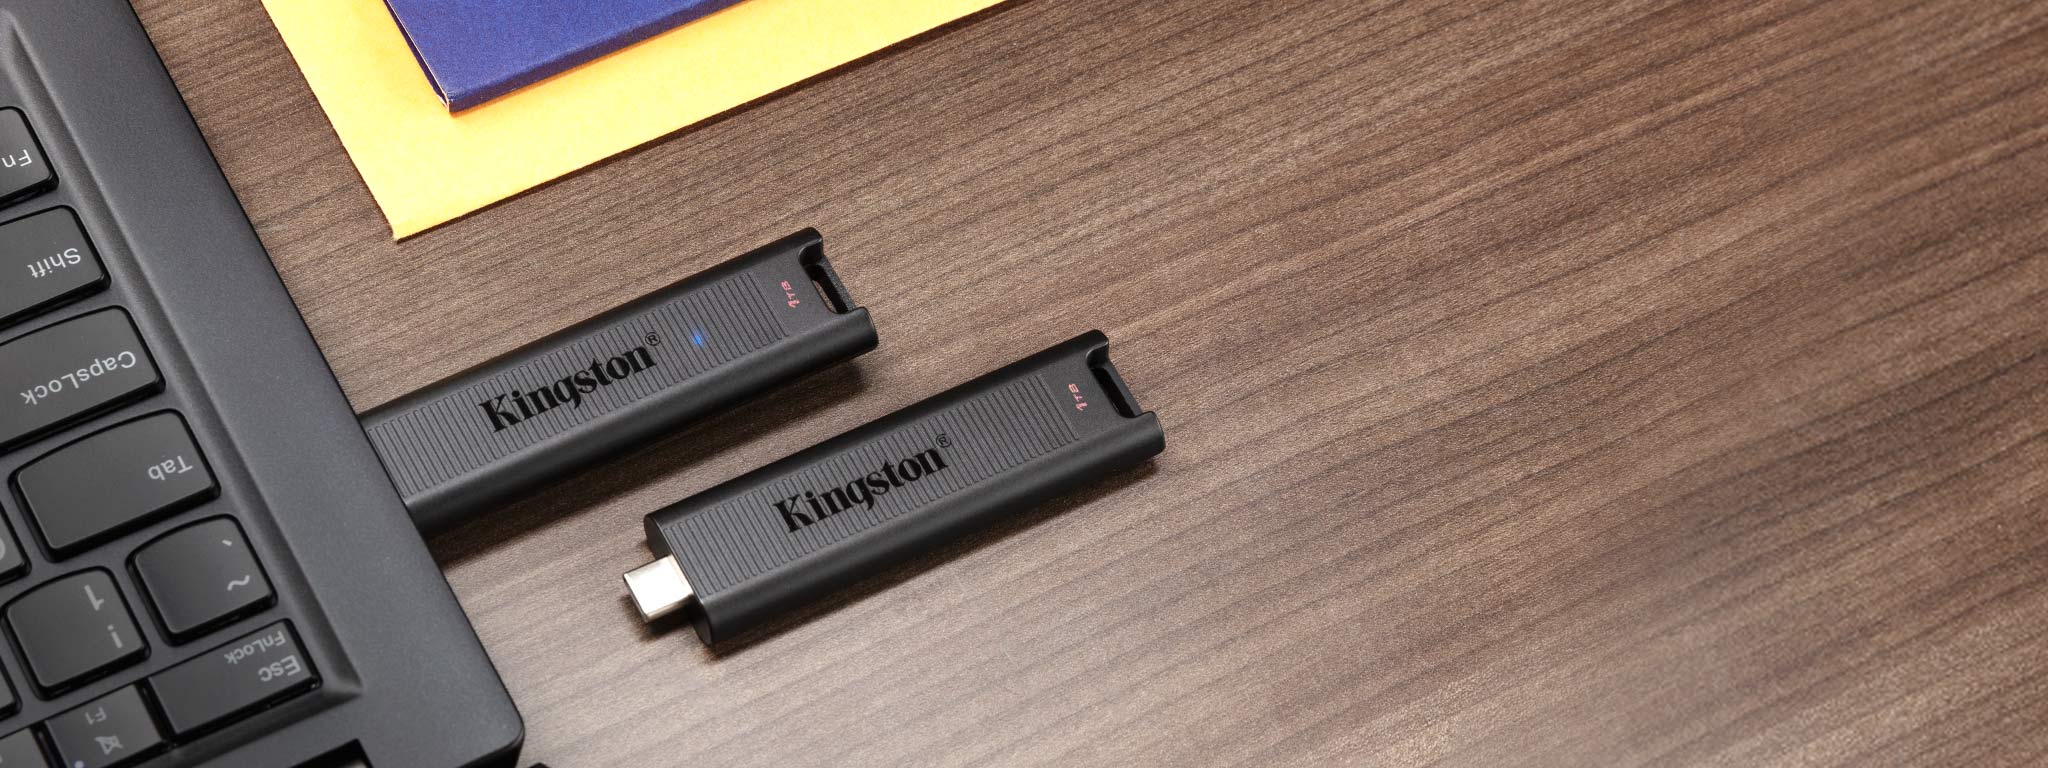 Kingston Technology anunció el lanzamiento de DataTraveler Max, una unidad USB Tipo C de alto rendimiento que utiliza el nuevo estándar USB